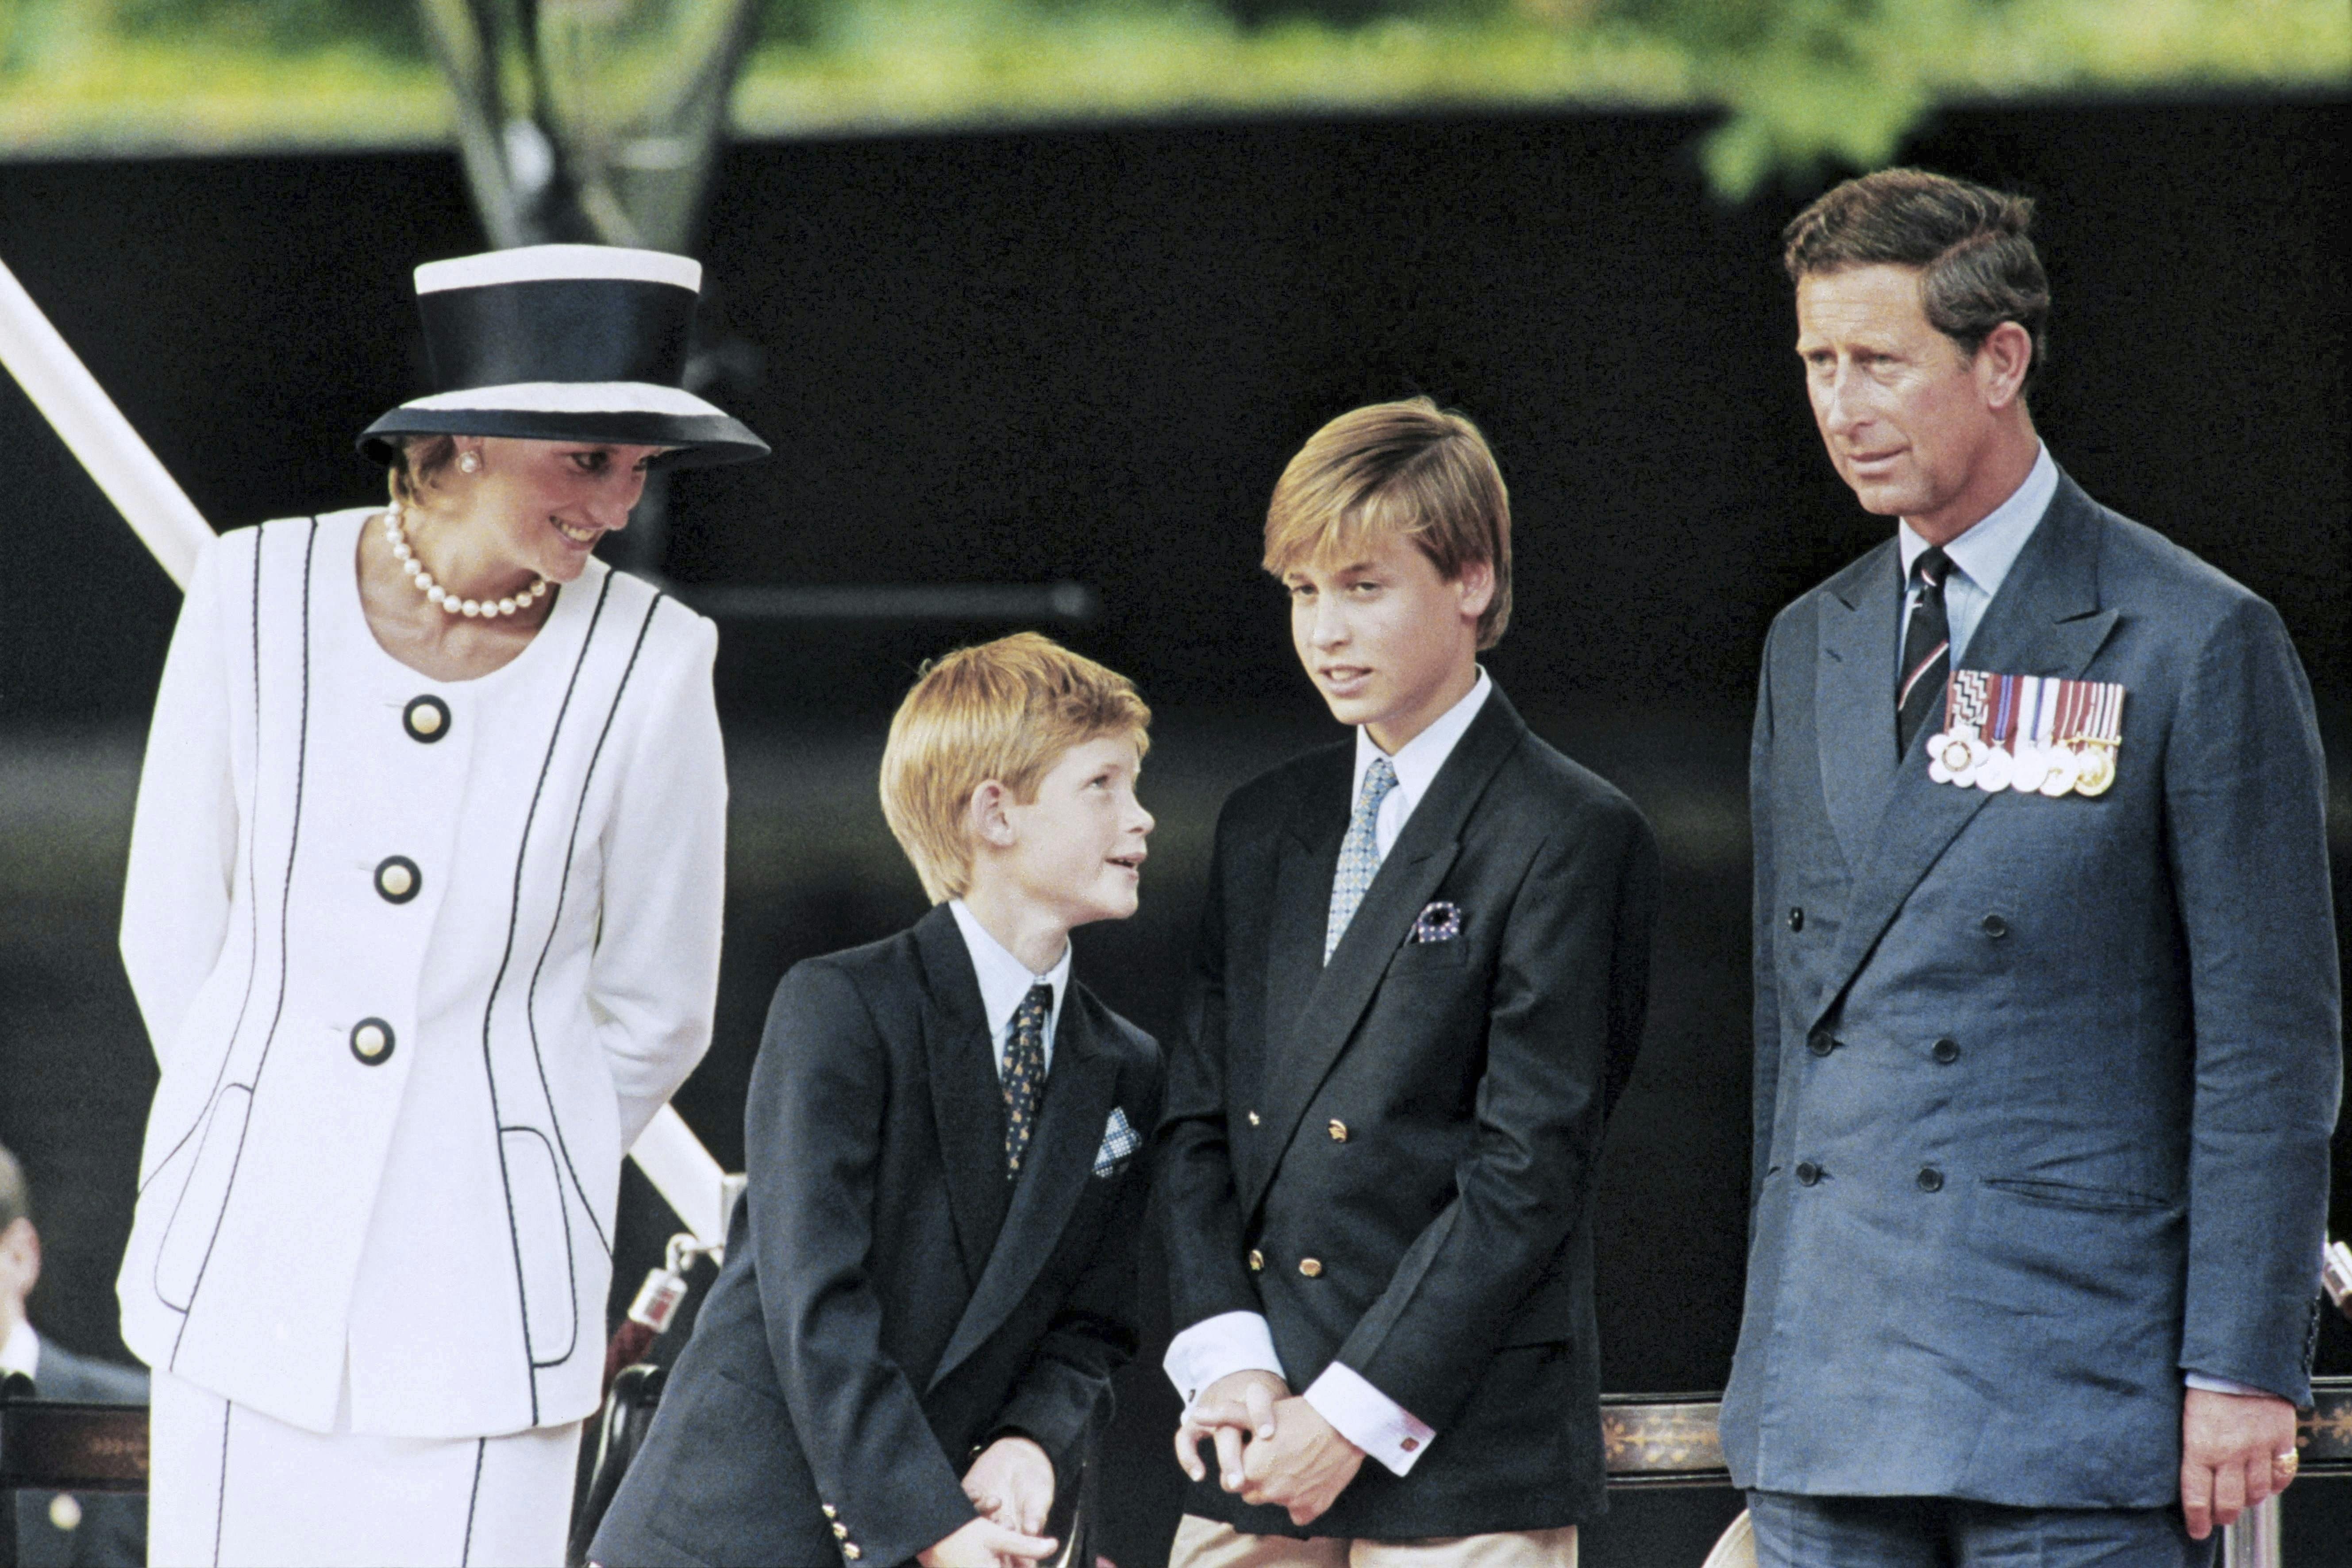 Harry er vokset op med intriger i familien – som dreng var det forældrene Diana og Charles, der mundhuggedes mere eller mindre offentligt.
